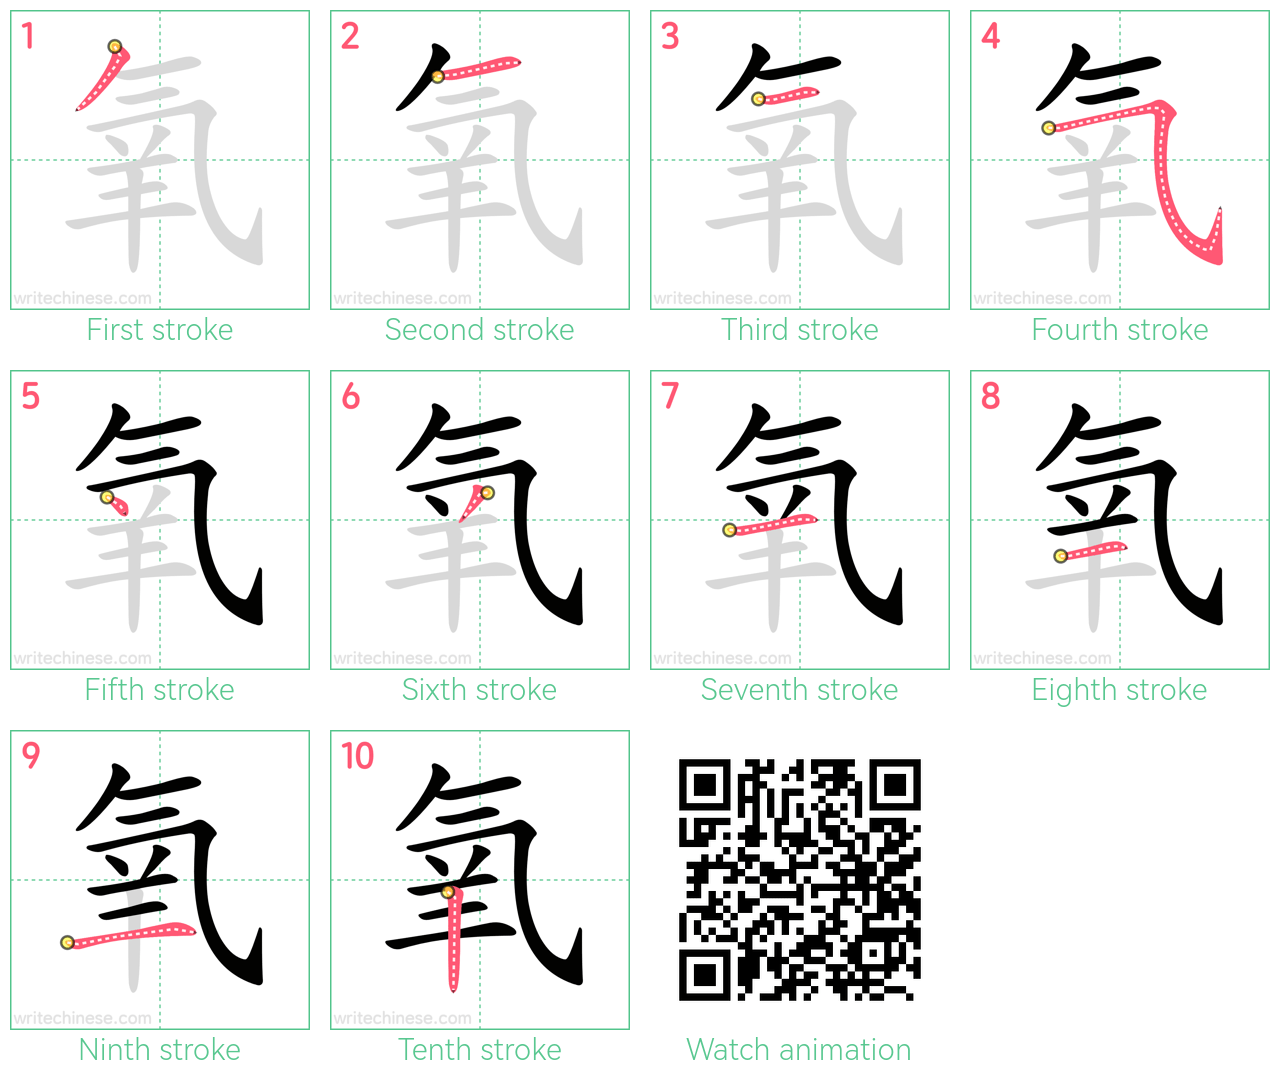 氧 step-by-step stroke order diagrams